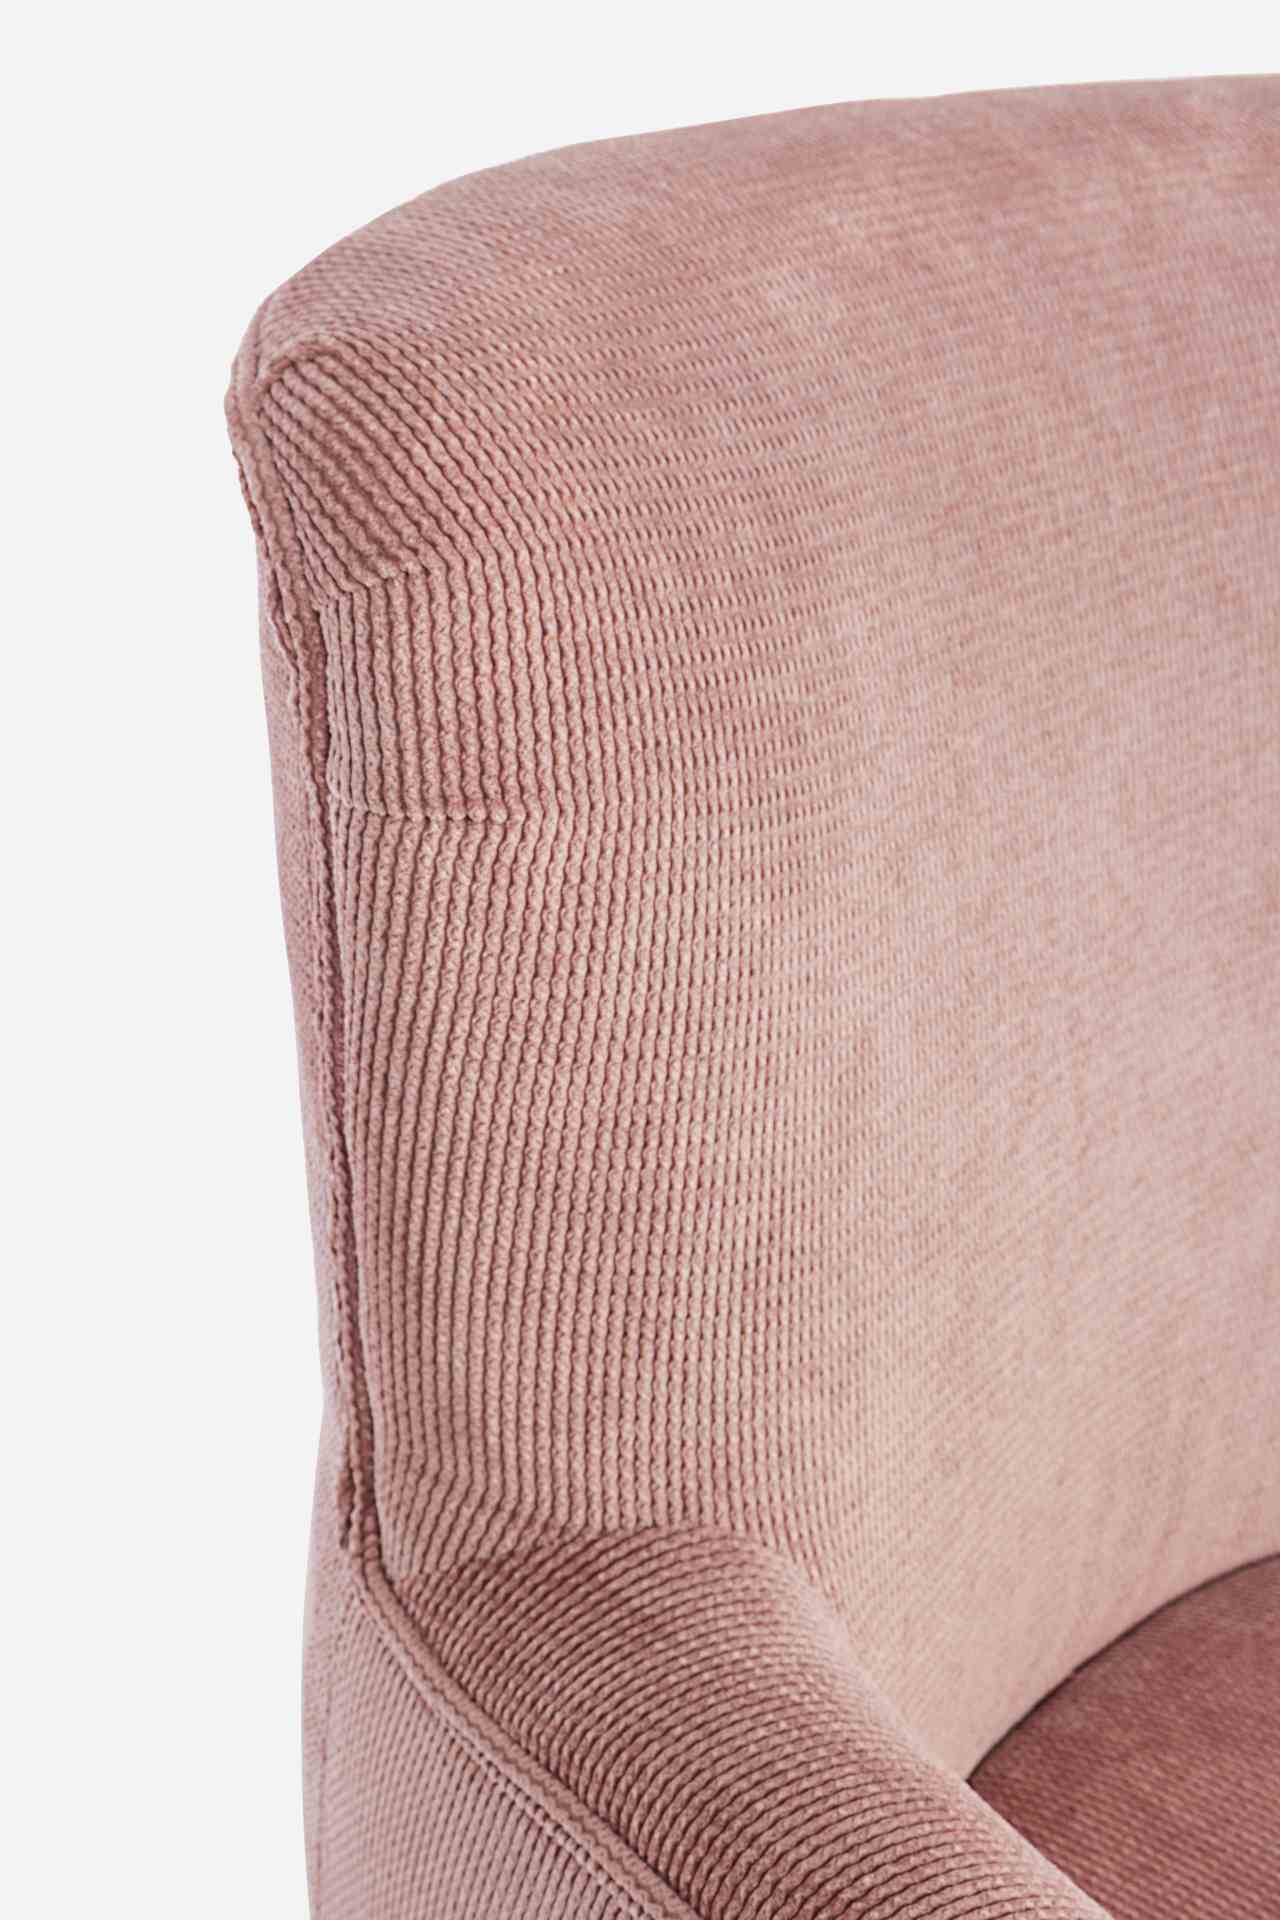 Der Sessel Chenille überzeugt mit seinem klassischen Design. Gefertigt wurde er aus Stoff in Cord-Optik, welcher einen rosa Farbton besitzt. Das Gestell ist aus Kautschukholz und hat eine natürliche Farbe. Der Sessel besitzt eine Sitzhöhe von 45 cm. Die B